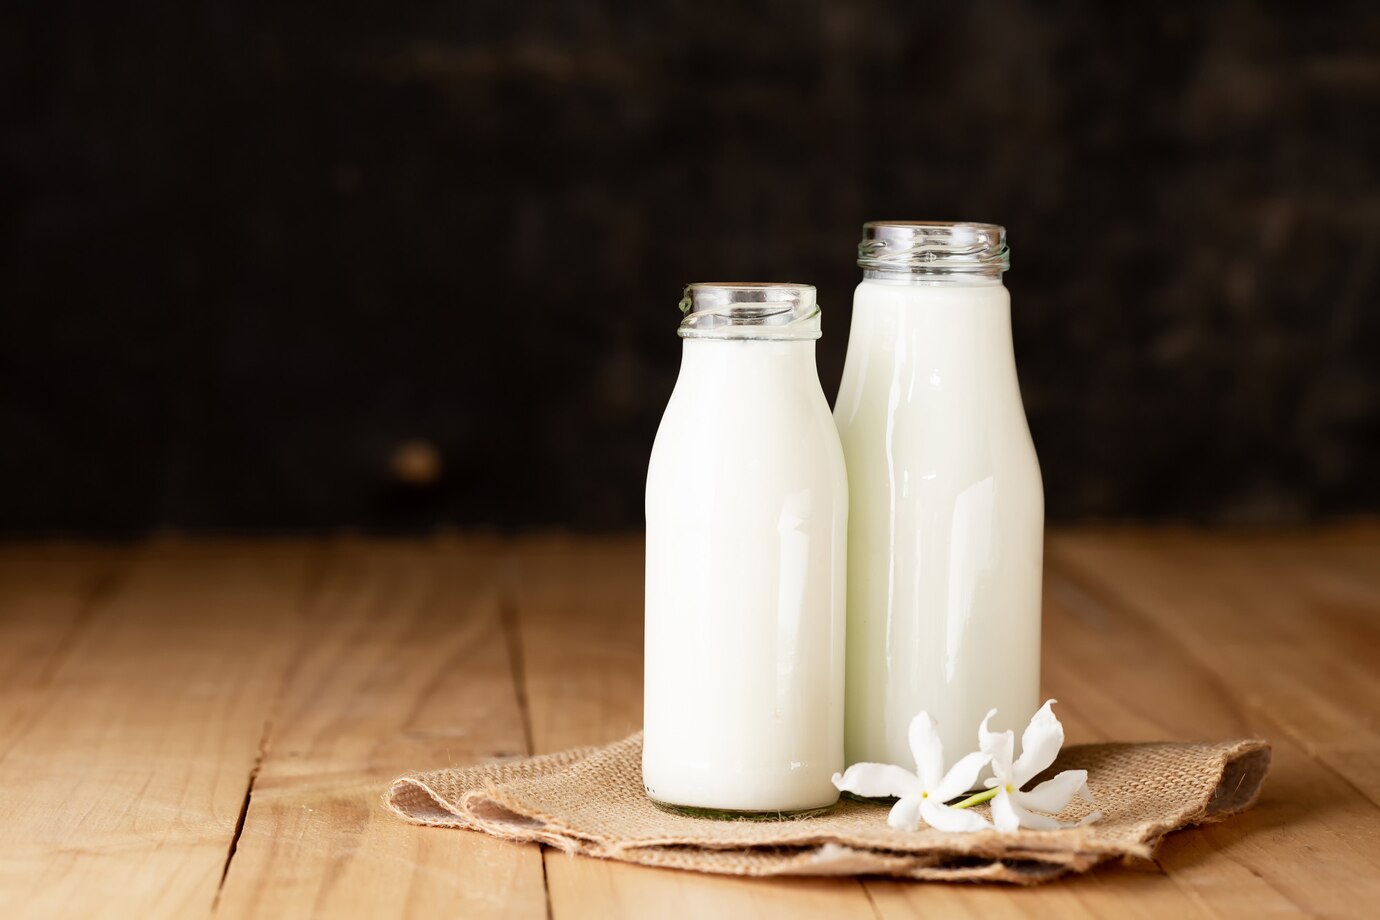 Mleko i jego przetwory to główne źródła wielocukru, zwanego laktozą